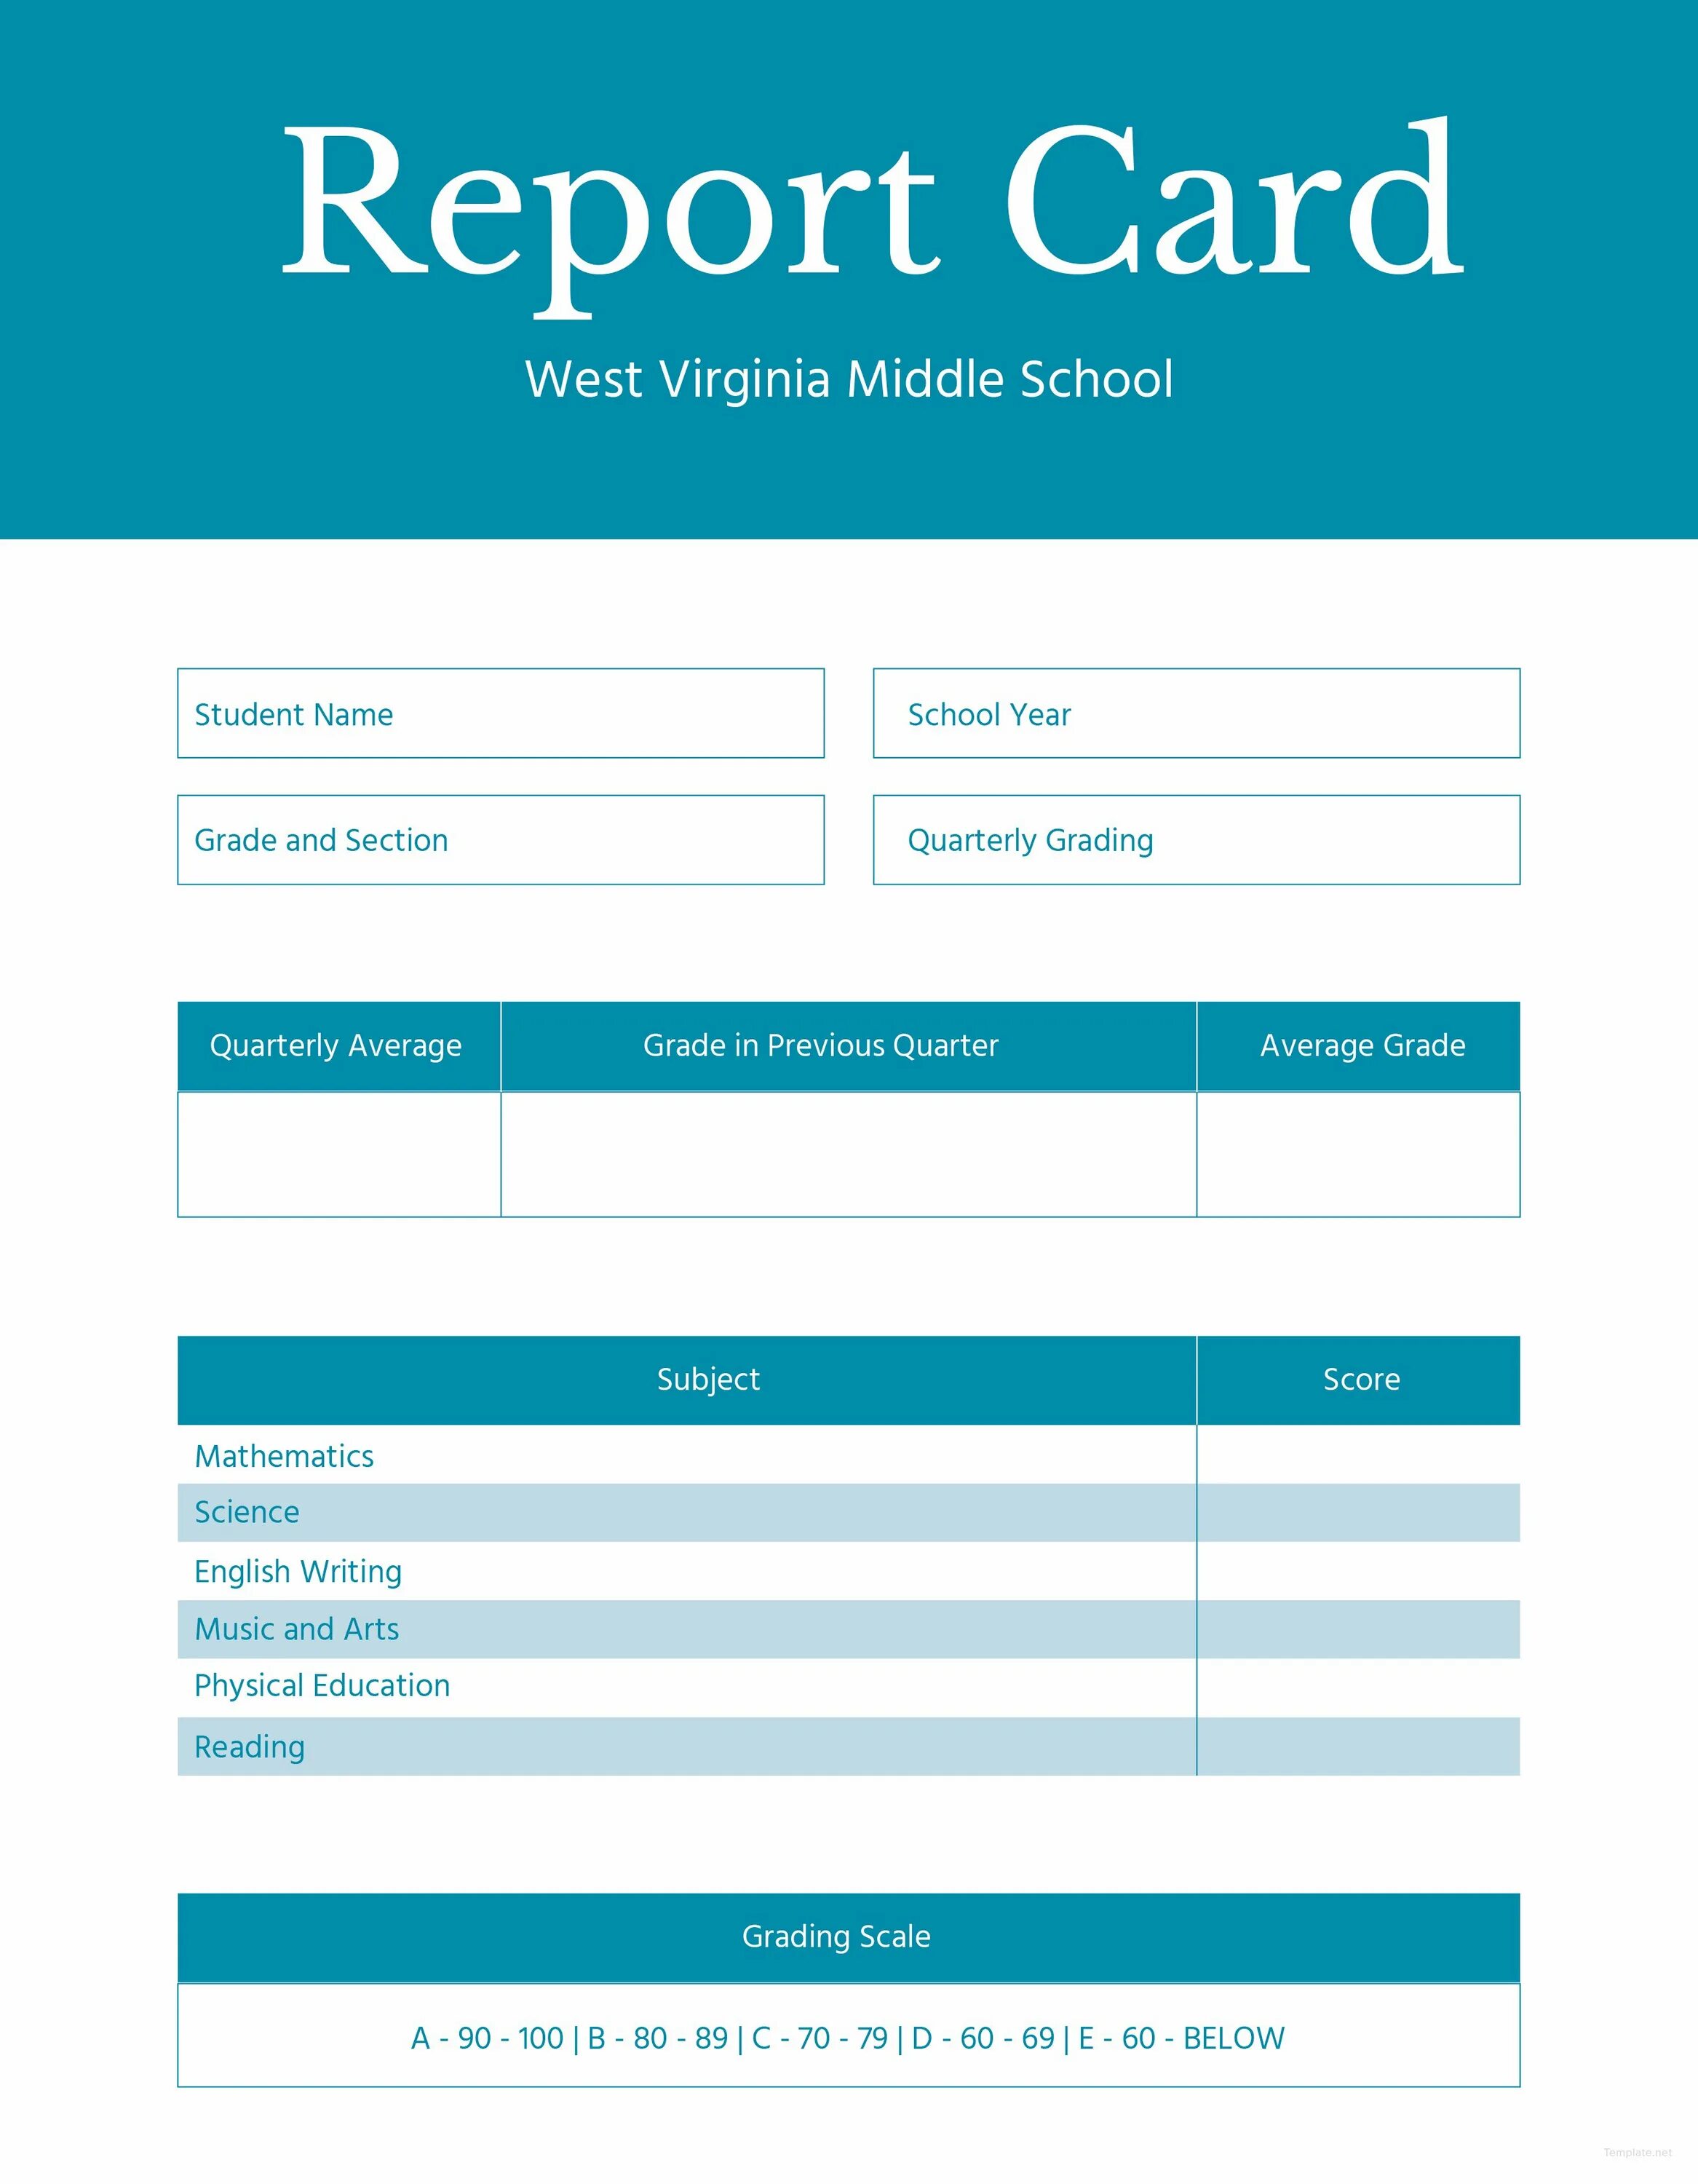 School report. School Report Card. Report Card Template. Report Card example. School Report example.